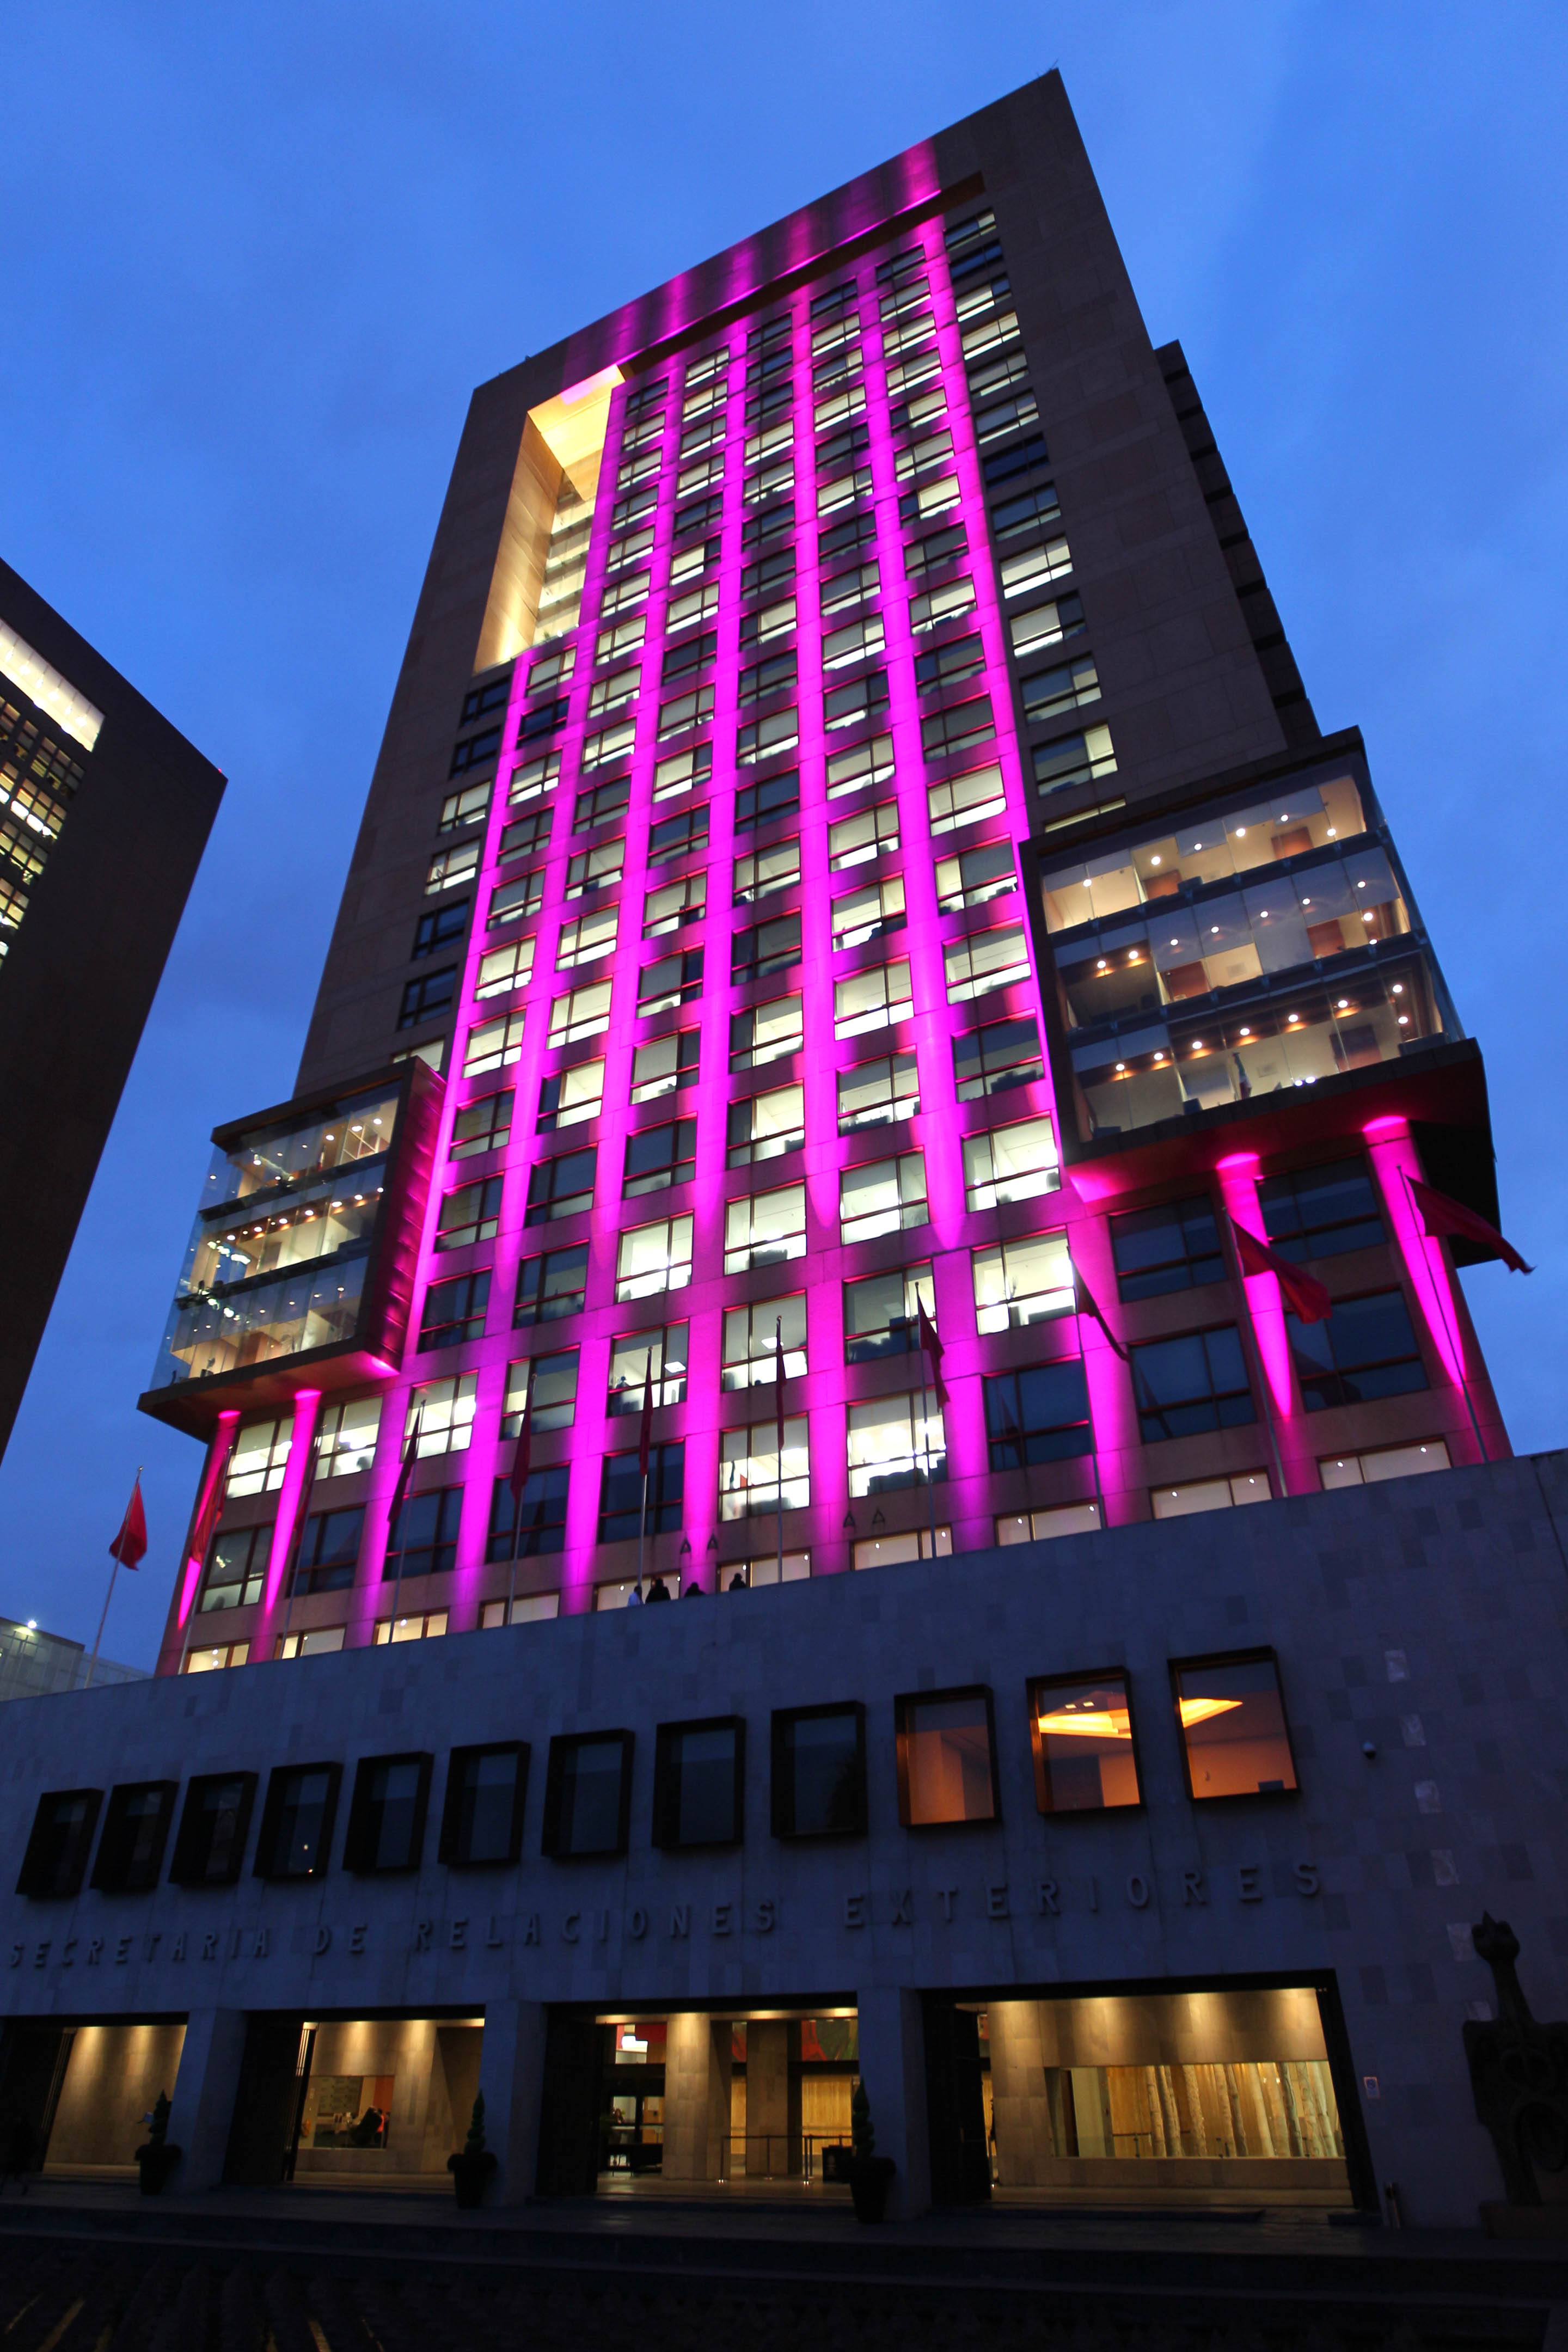 FOTO 2 Edificio de la SRE se ilumina de rosa en el D a internacional de la lucha contra el c ncer de mama.jpg